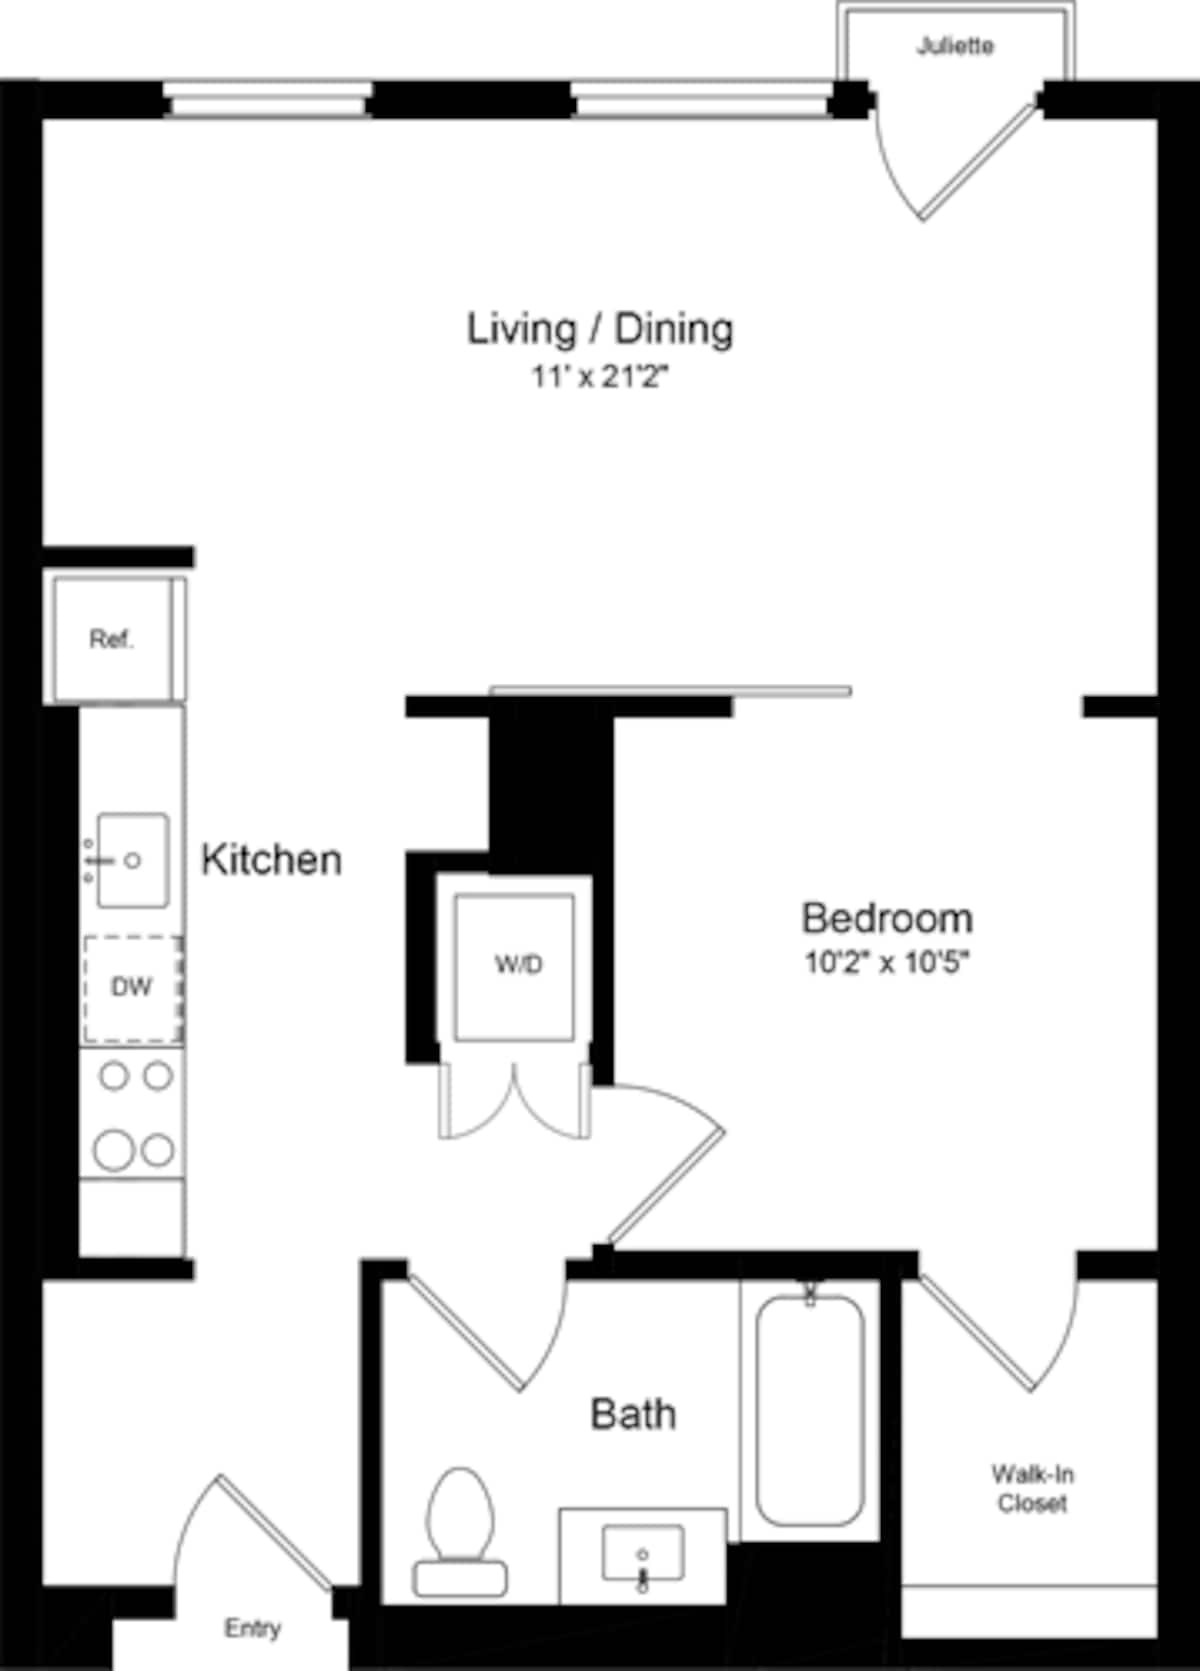 Floorplan diagram for 1 Bedroom IJ, showing 1 bedroom